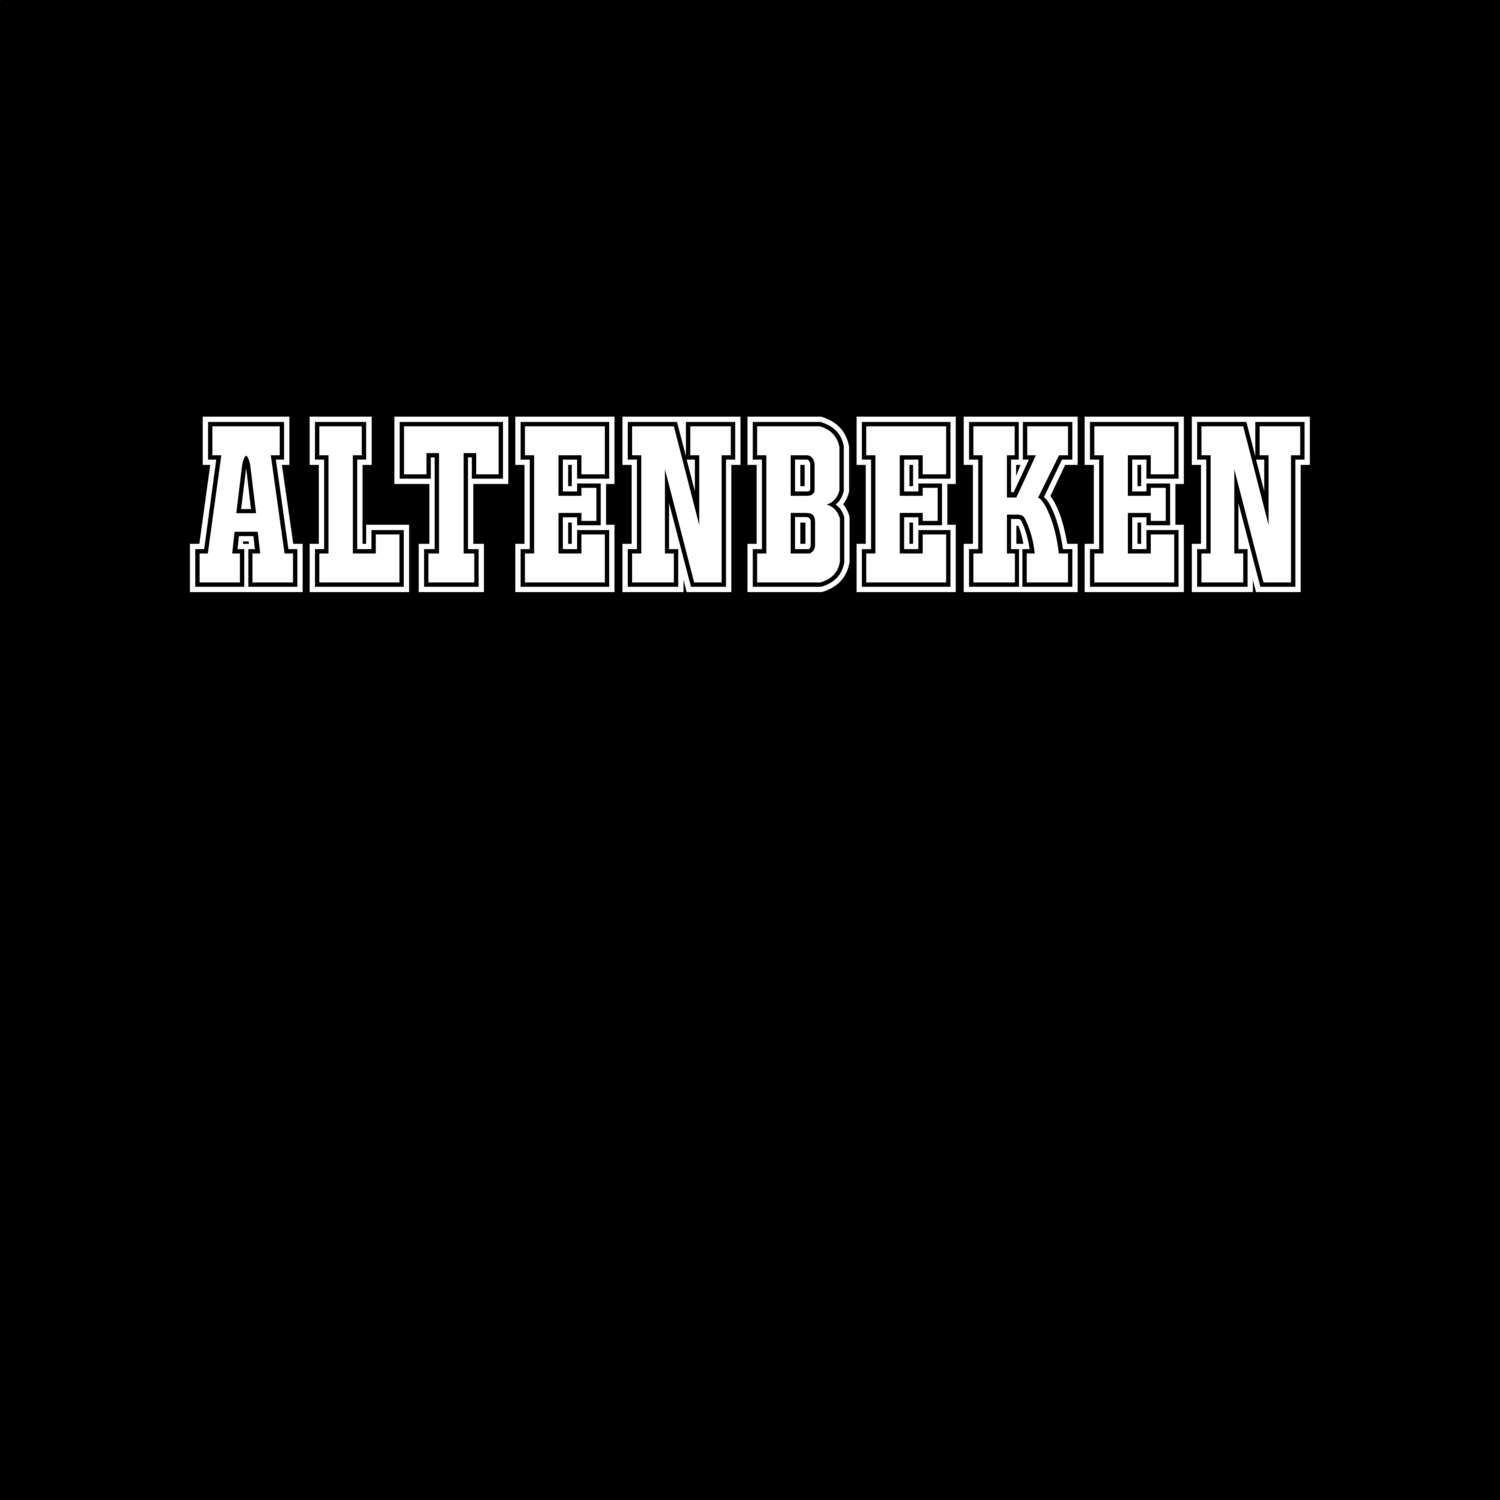 Altenbeken T-Shirt »Classic«